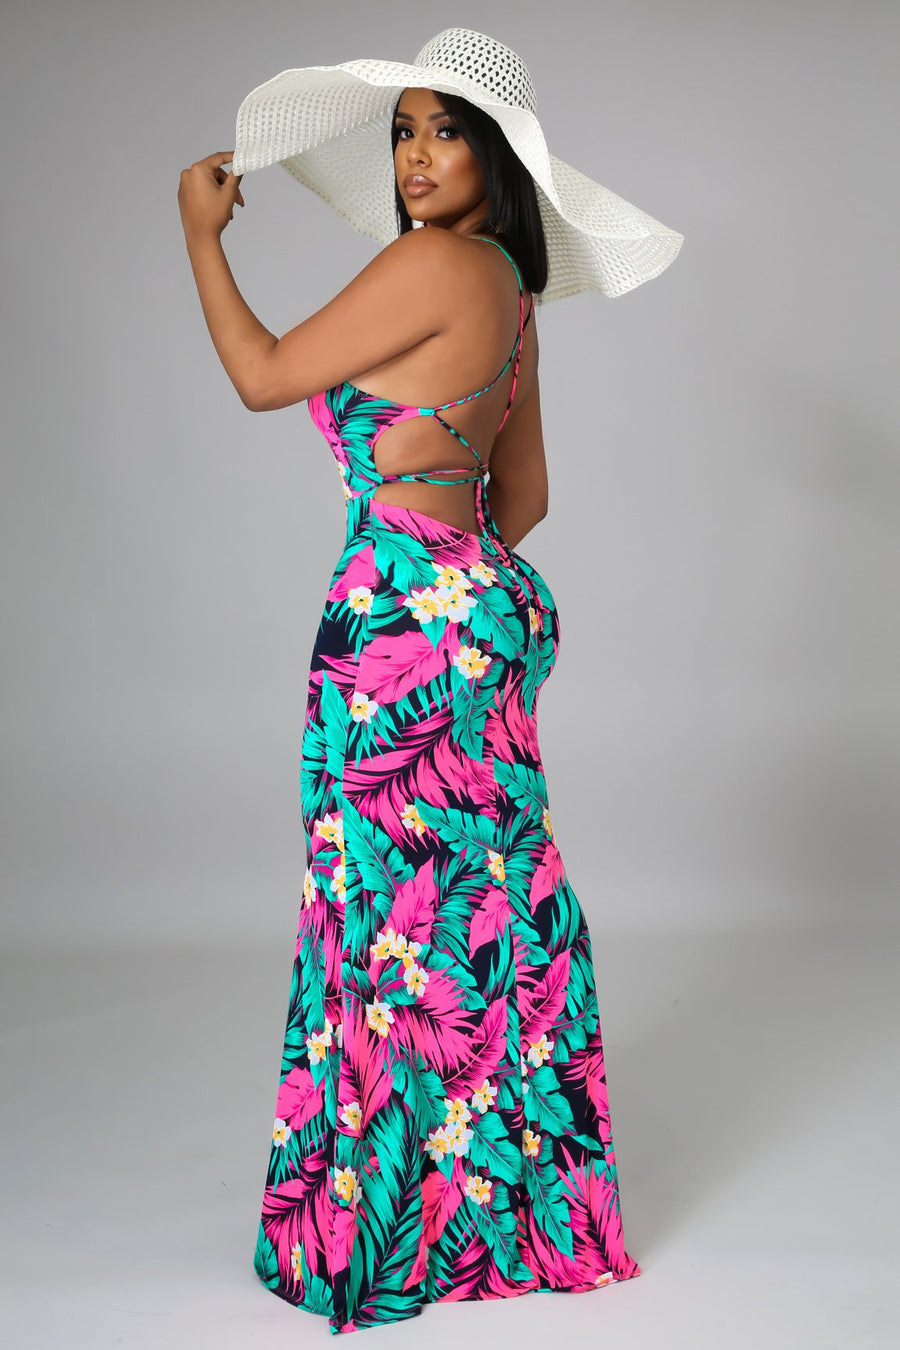 Tropical maxi dress